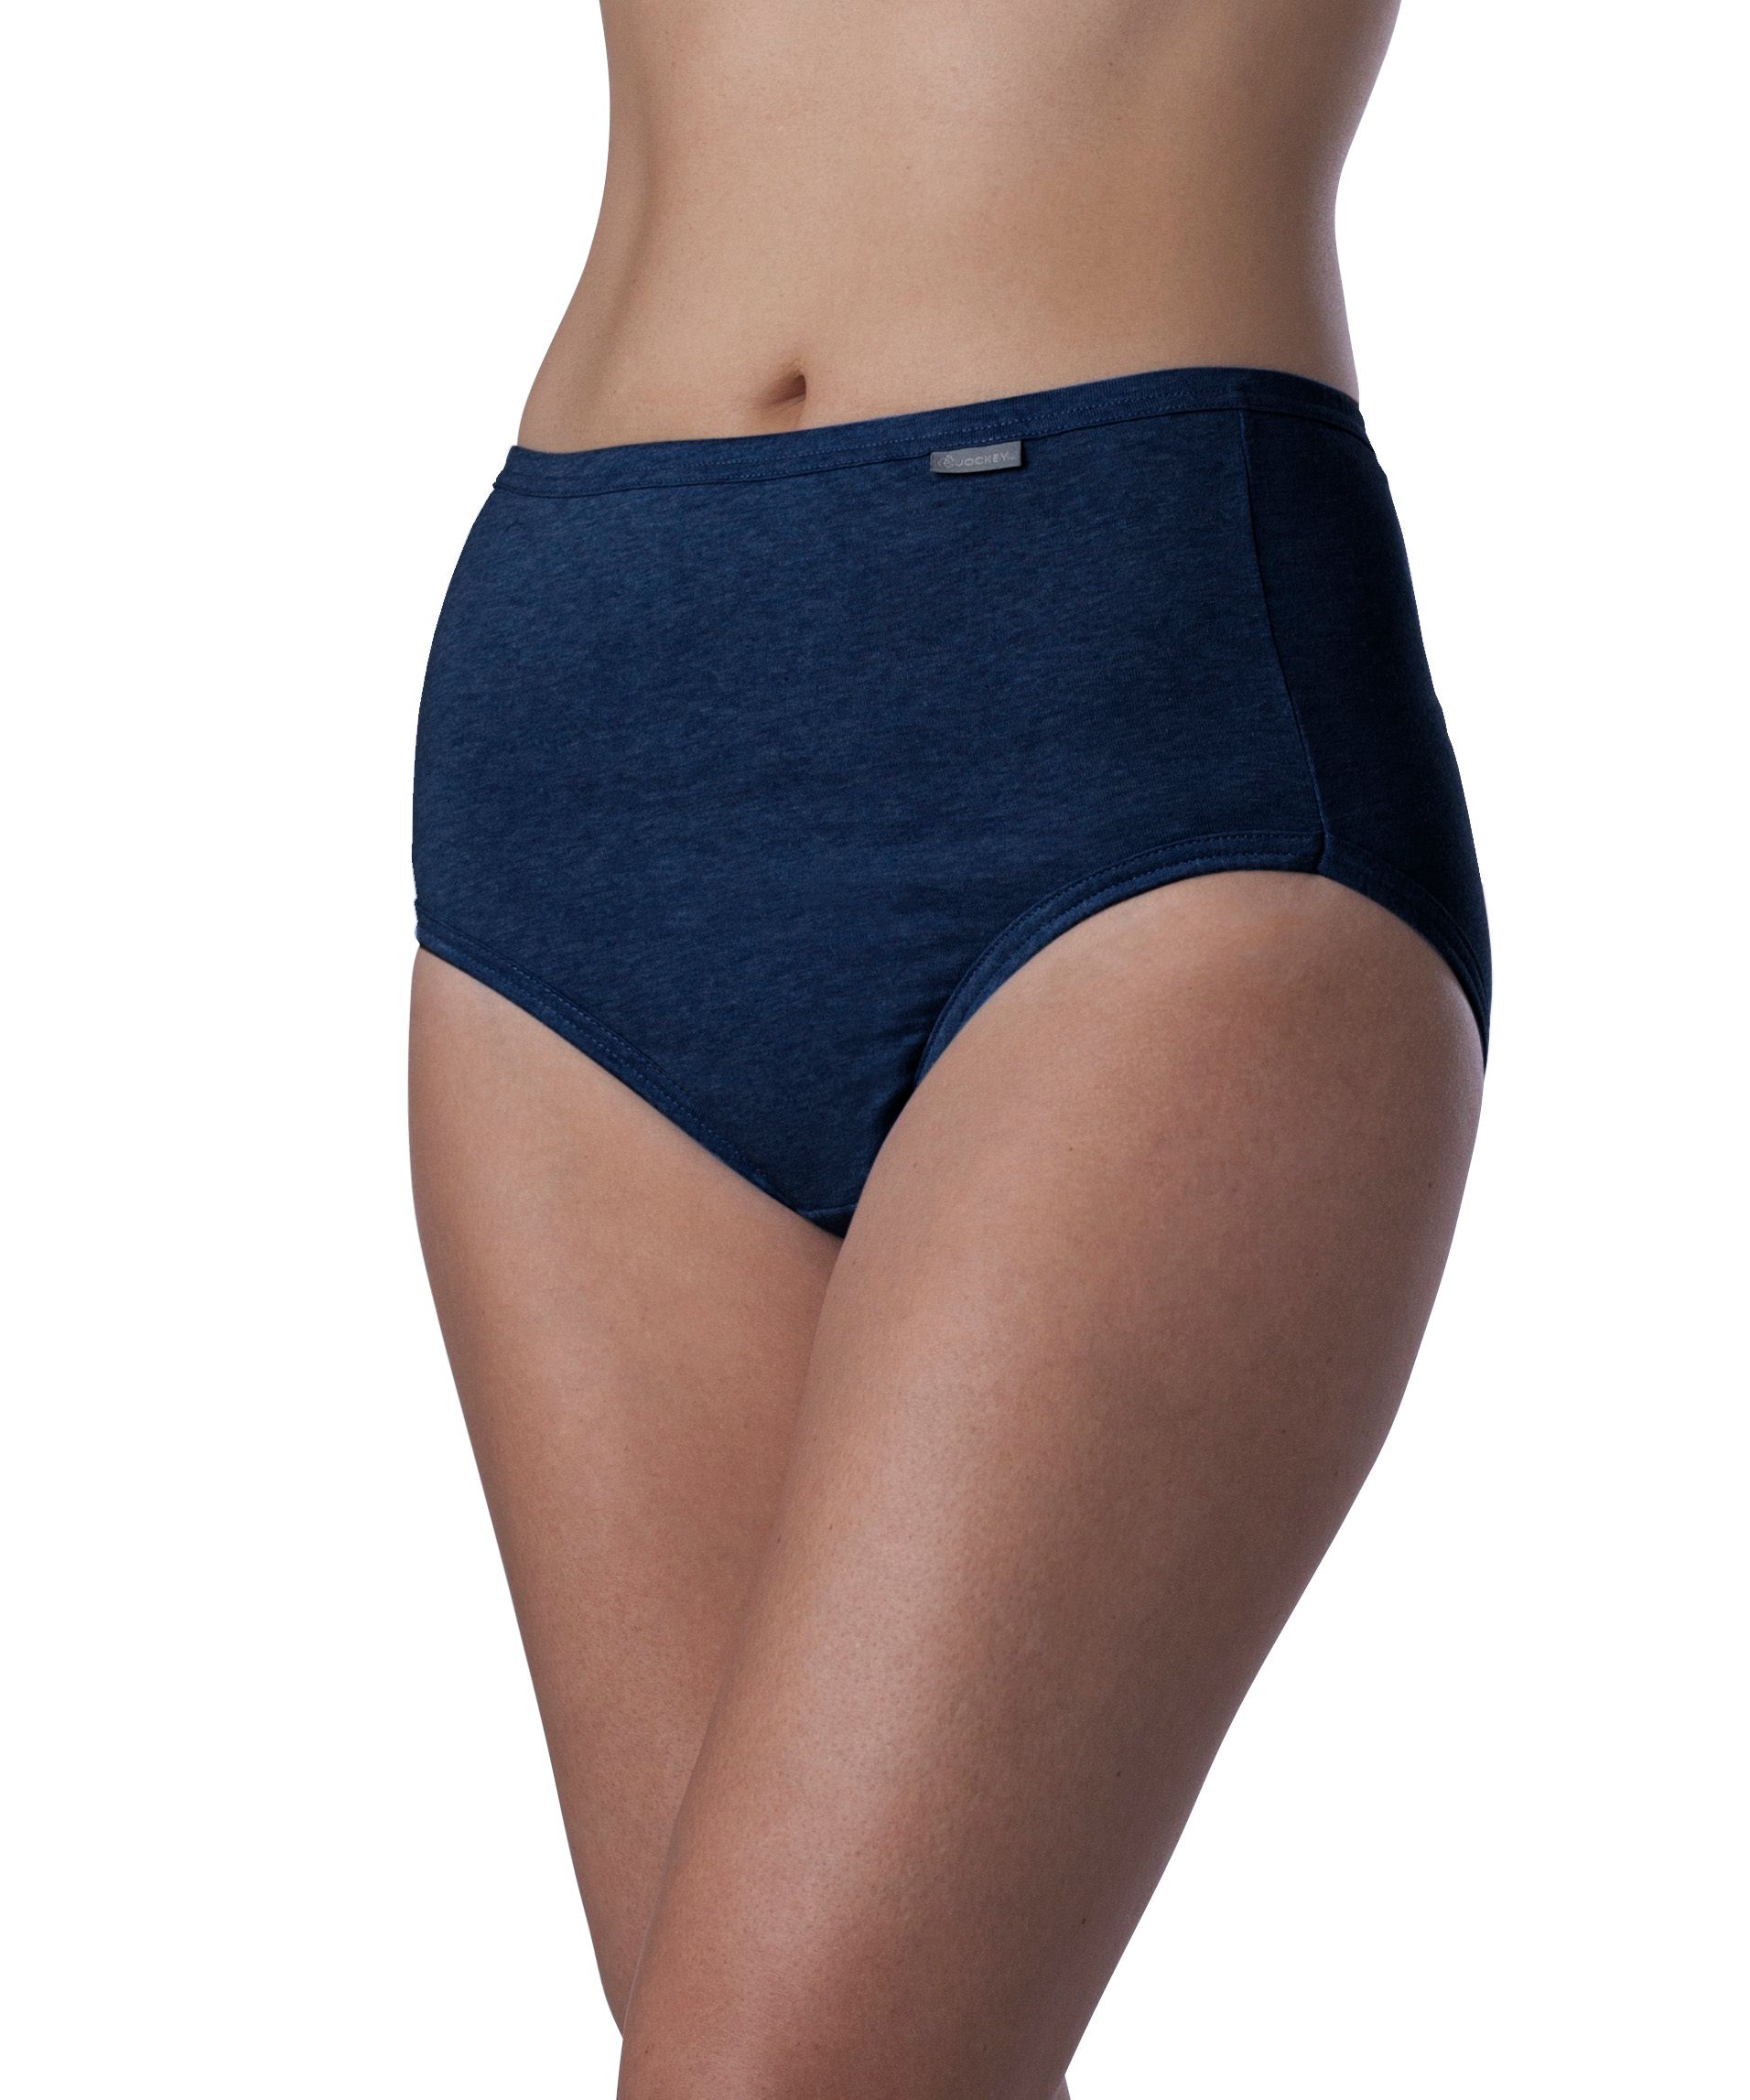 Jockey Elance 100% Cotton Brief Underwear - Women's Size 7 Brand New